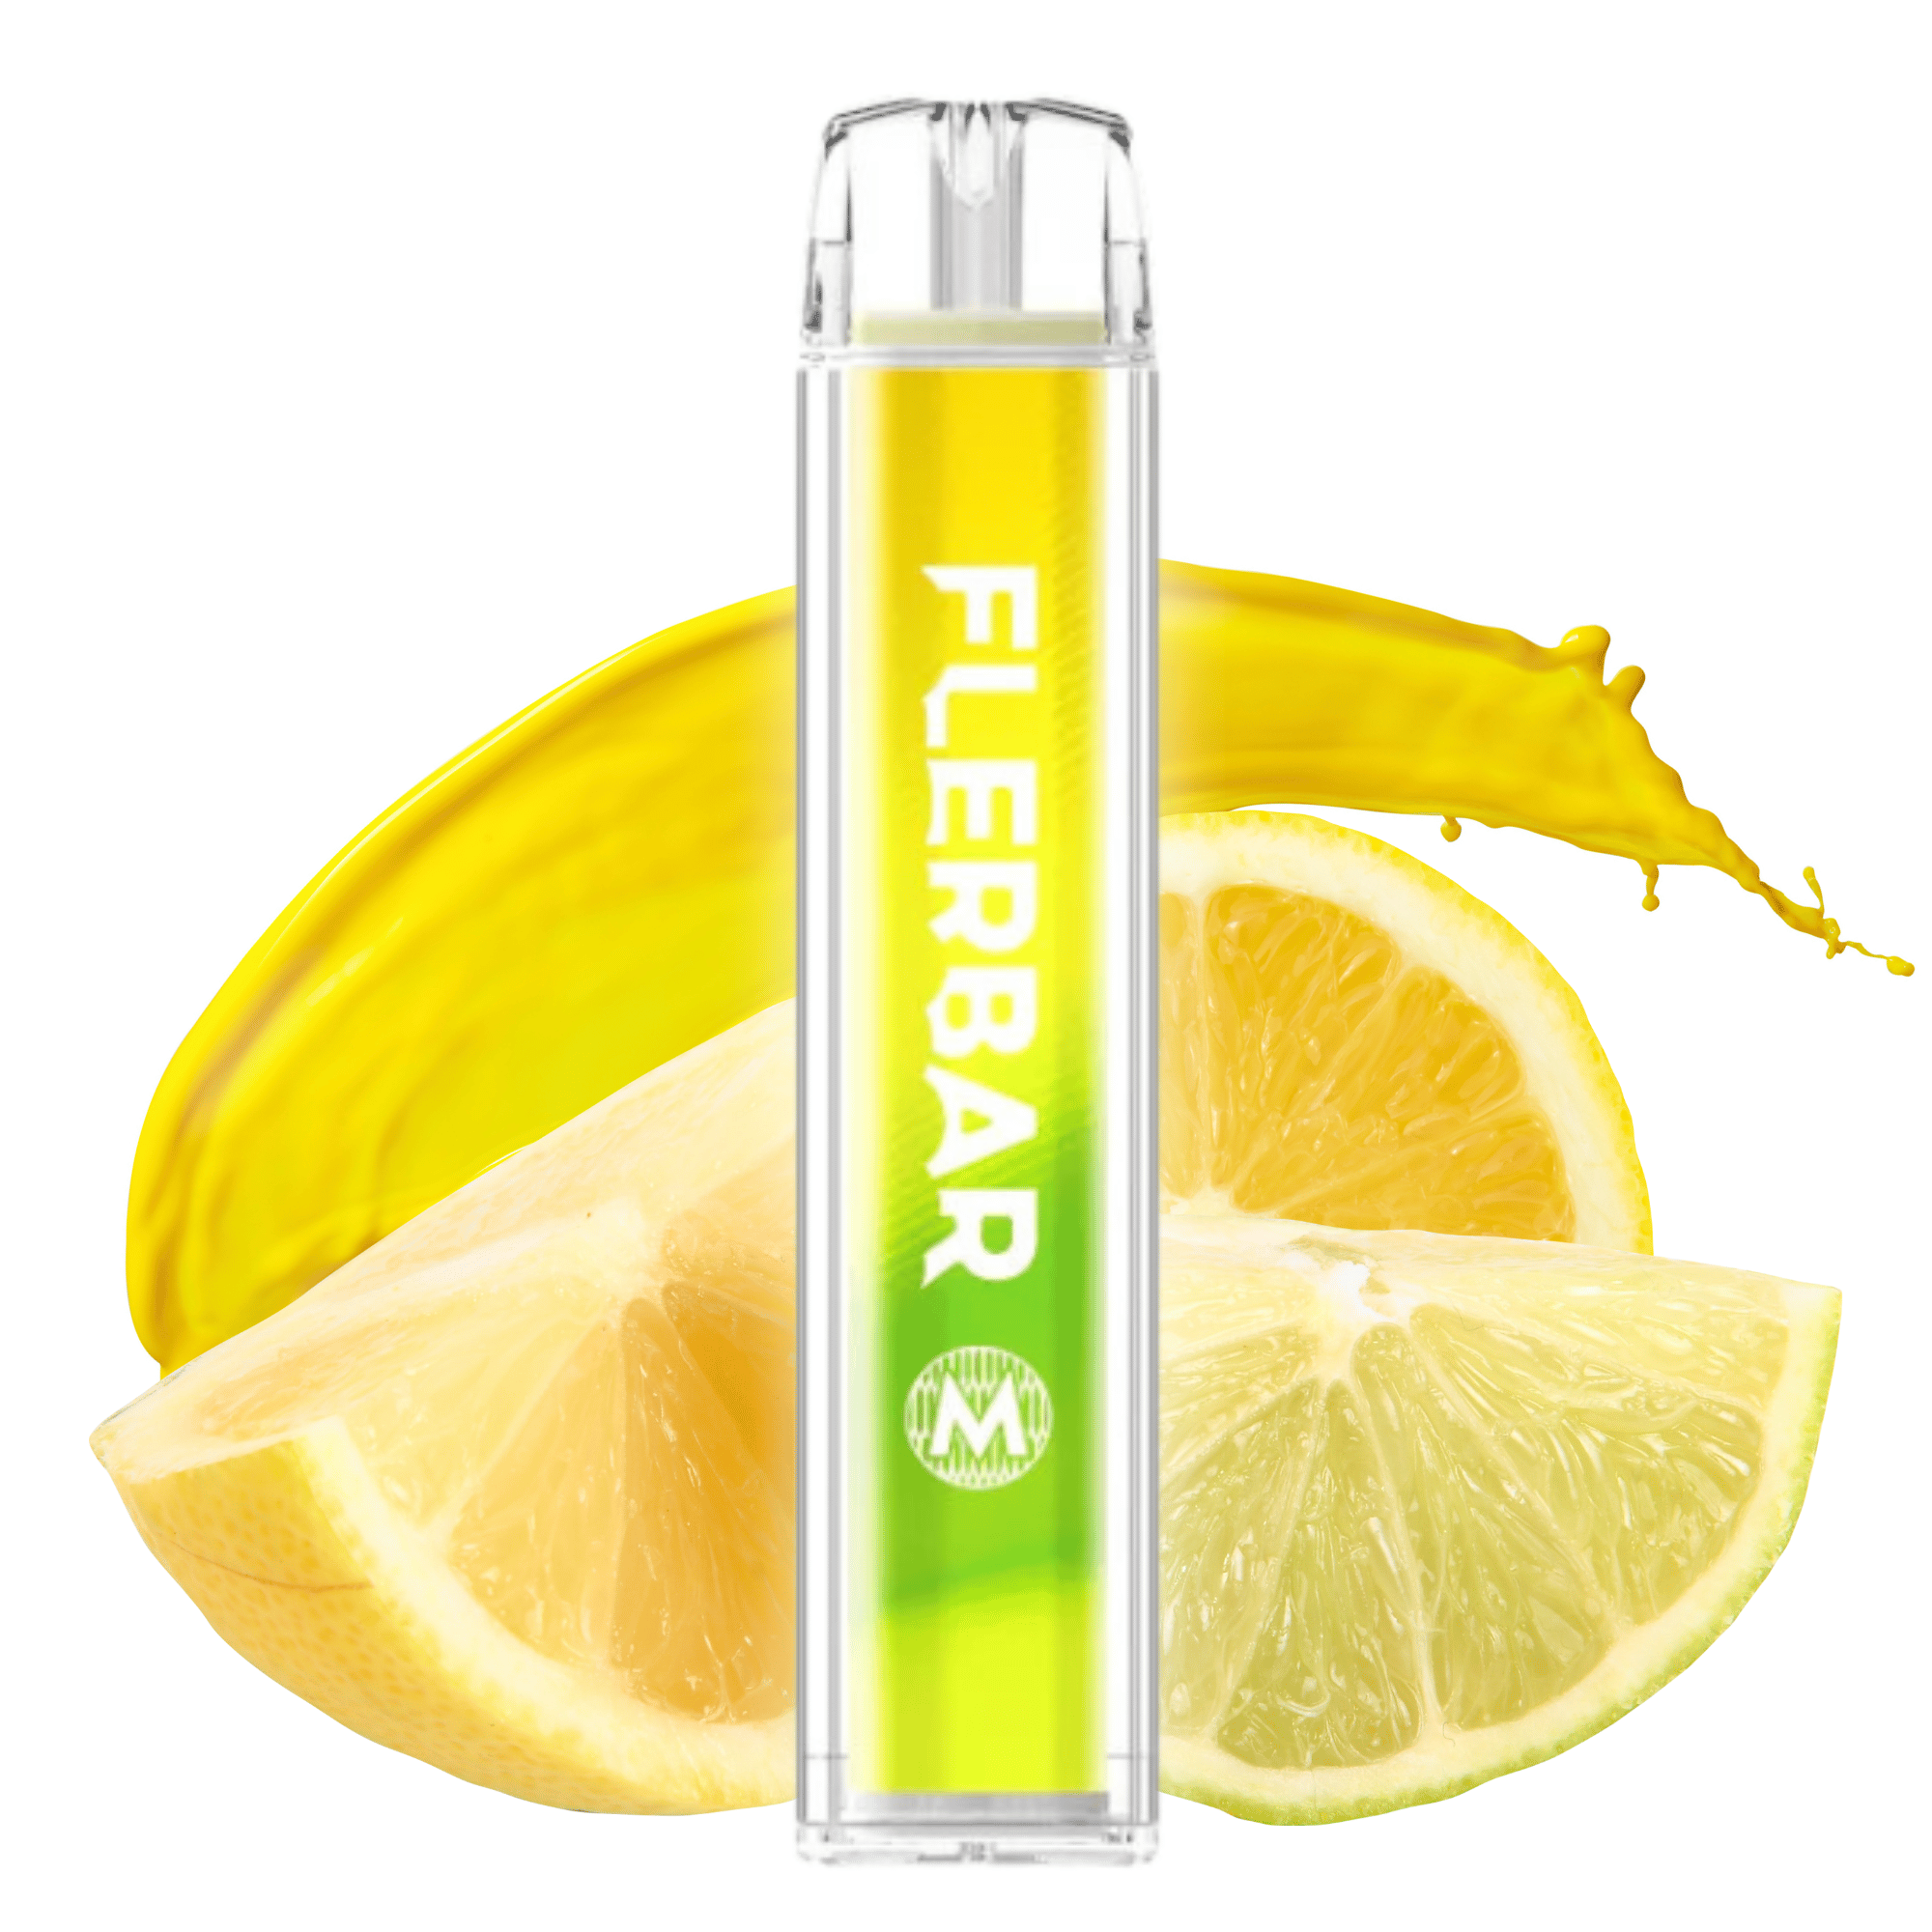 Flerbar Lemon 20mg/ml